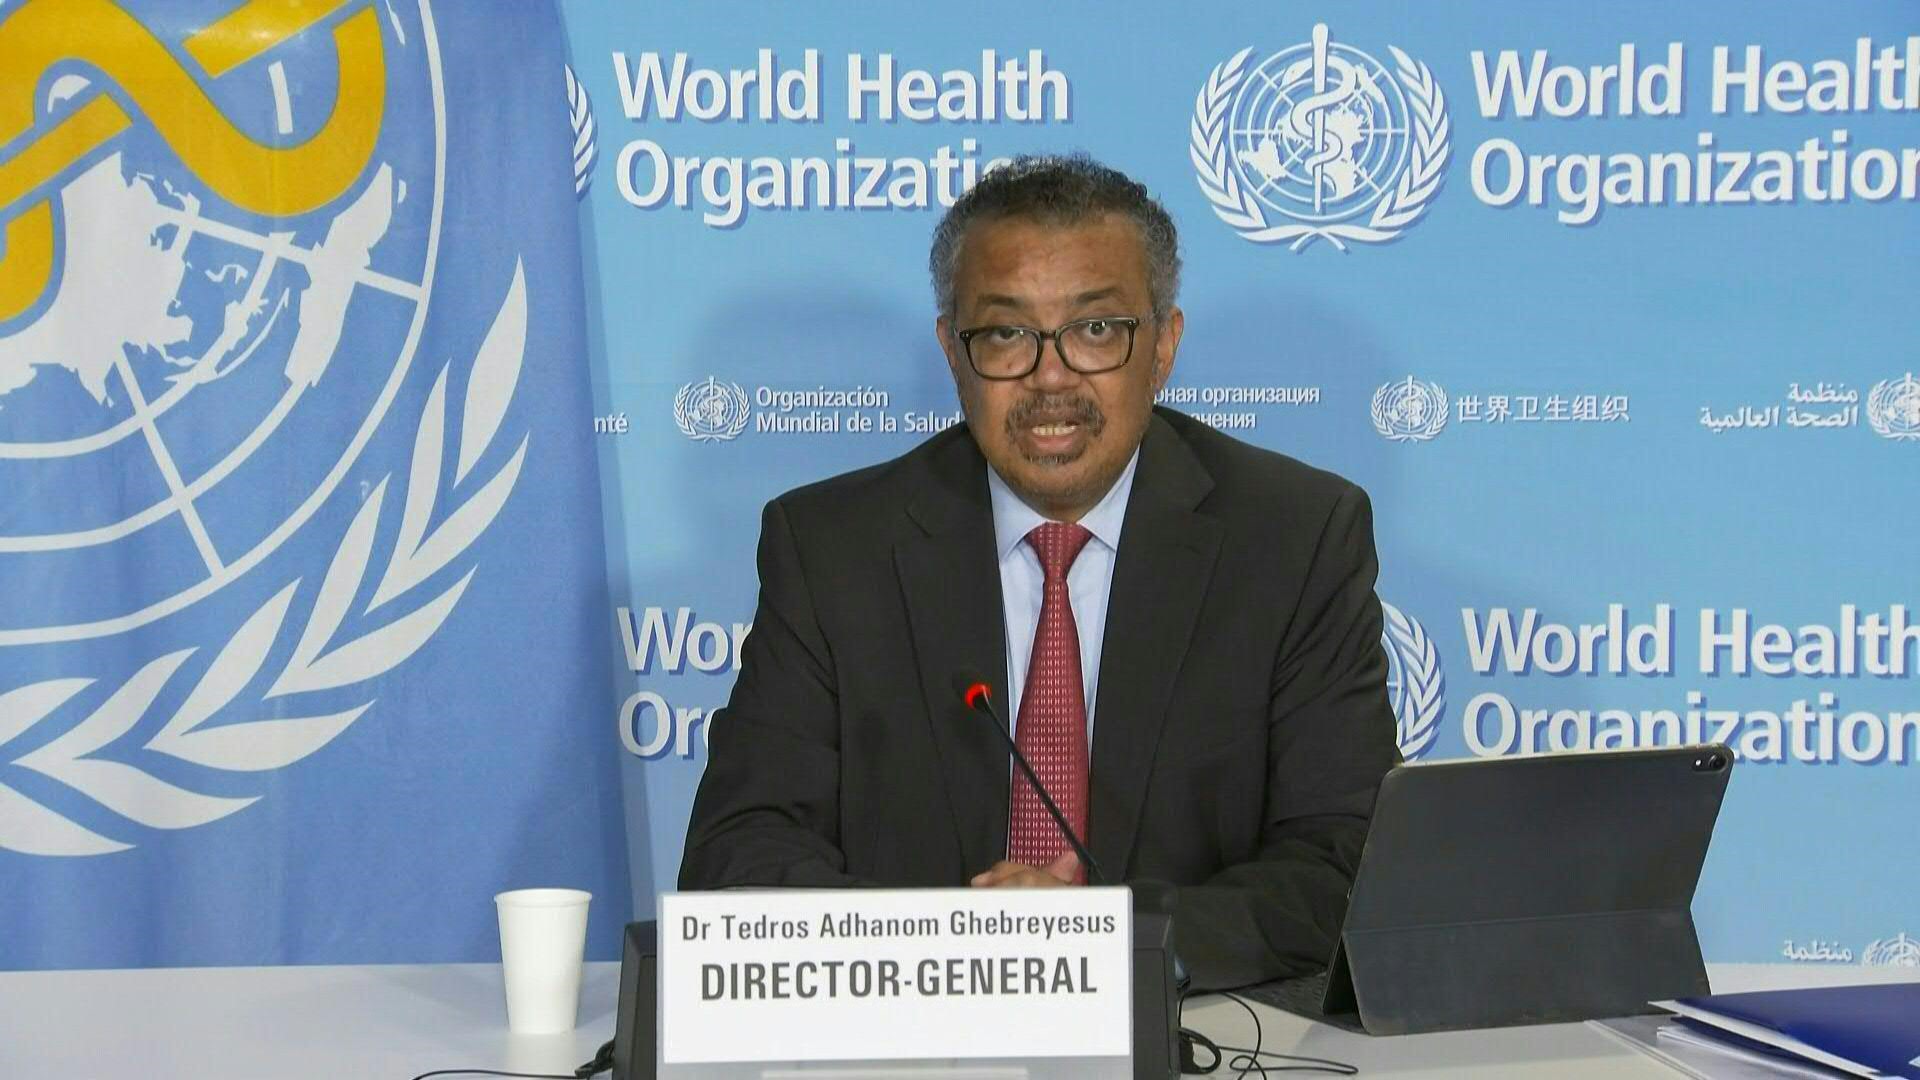 El director general de la OMS, Tedros Adhanom Ghebreyesus, brindó una conferencia de prensa para anunciar la nueva medida global